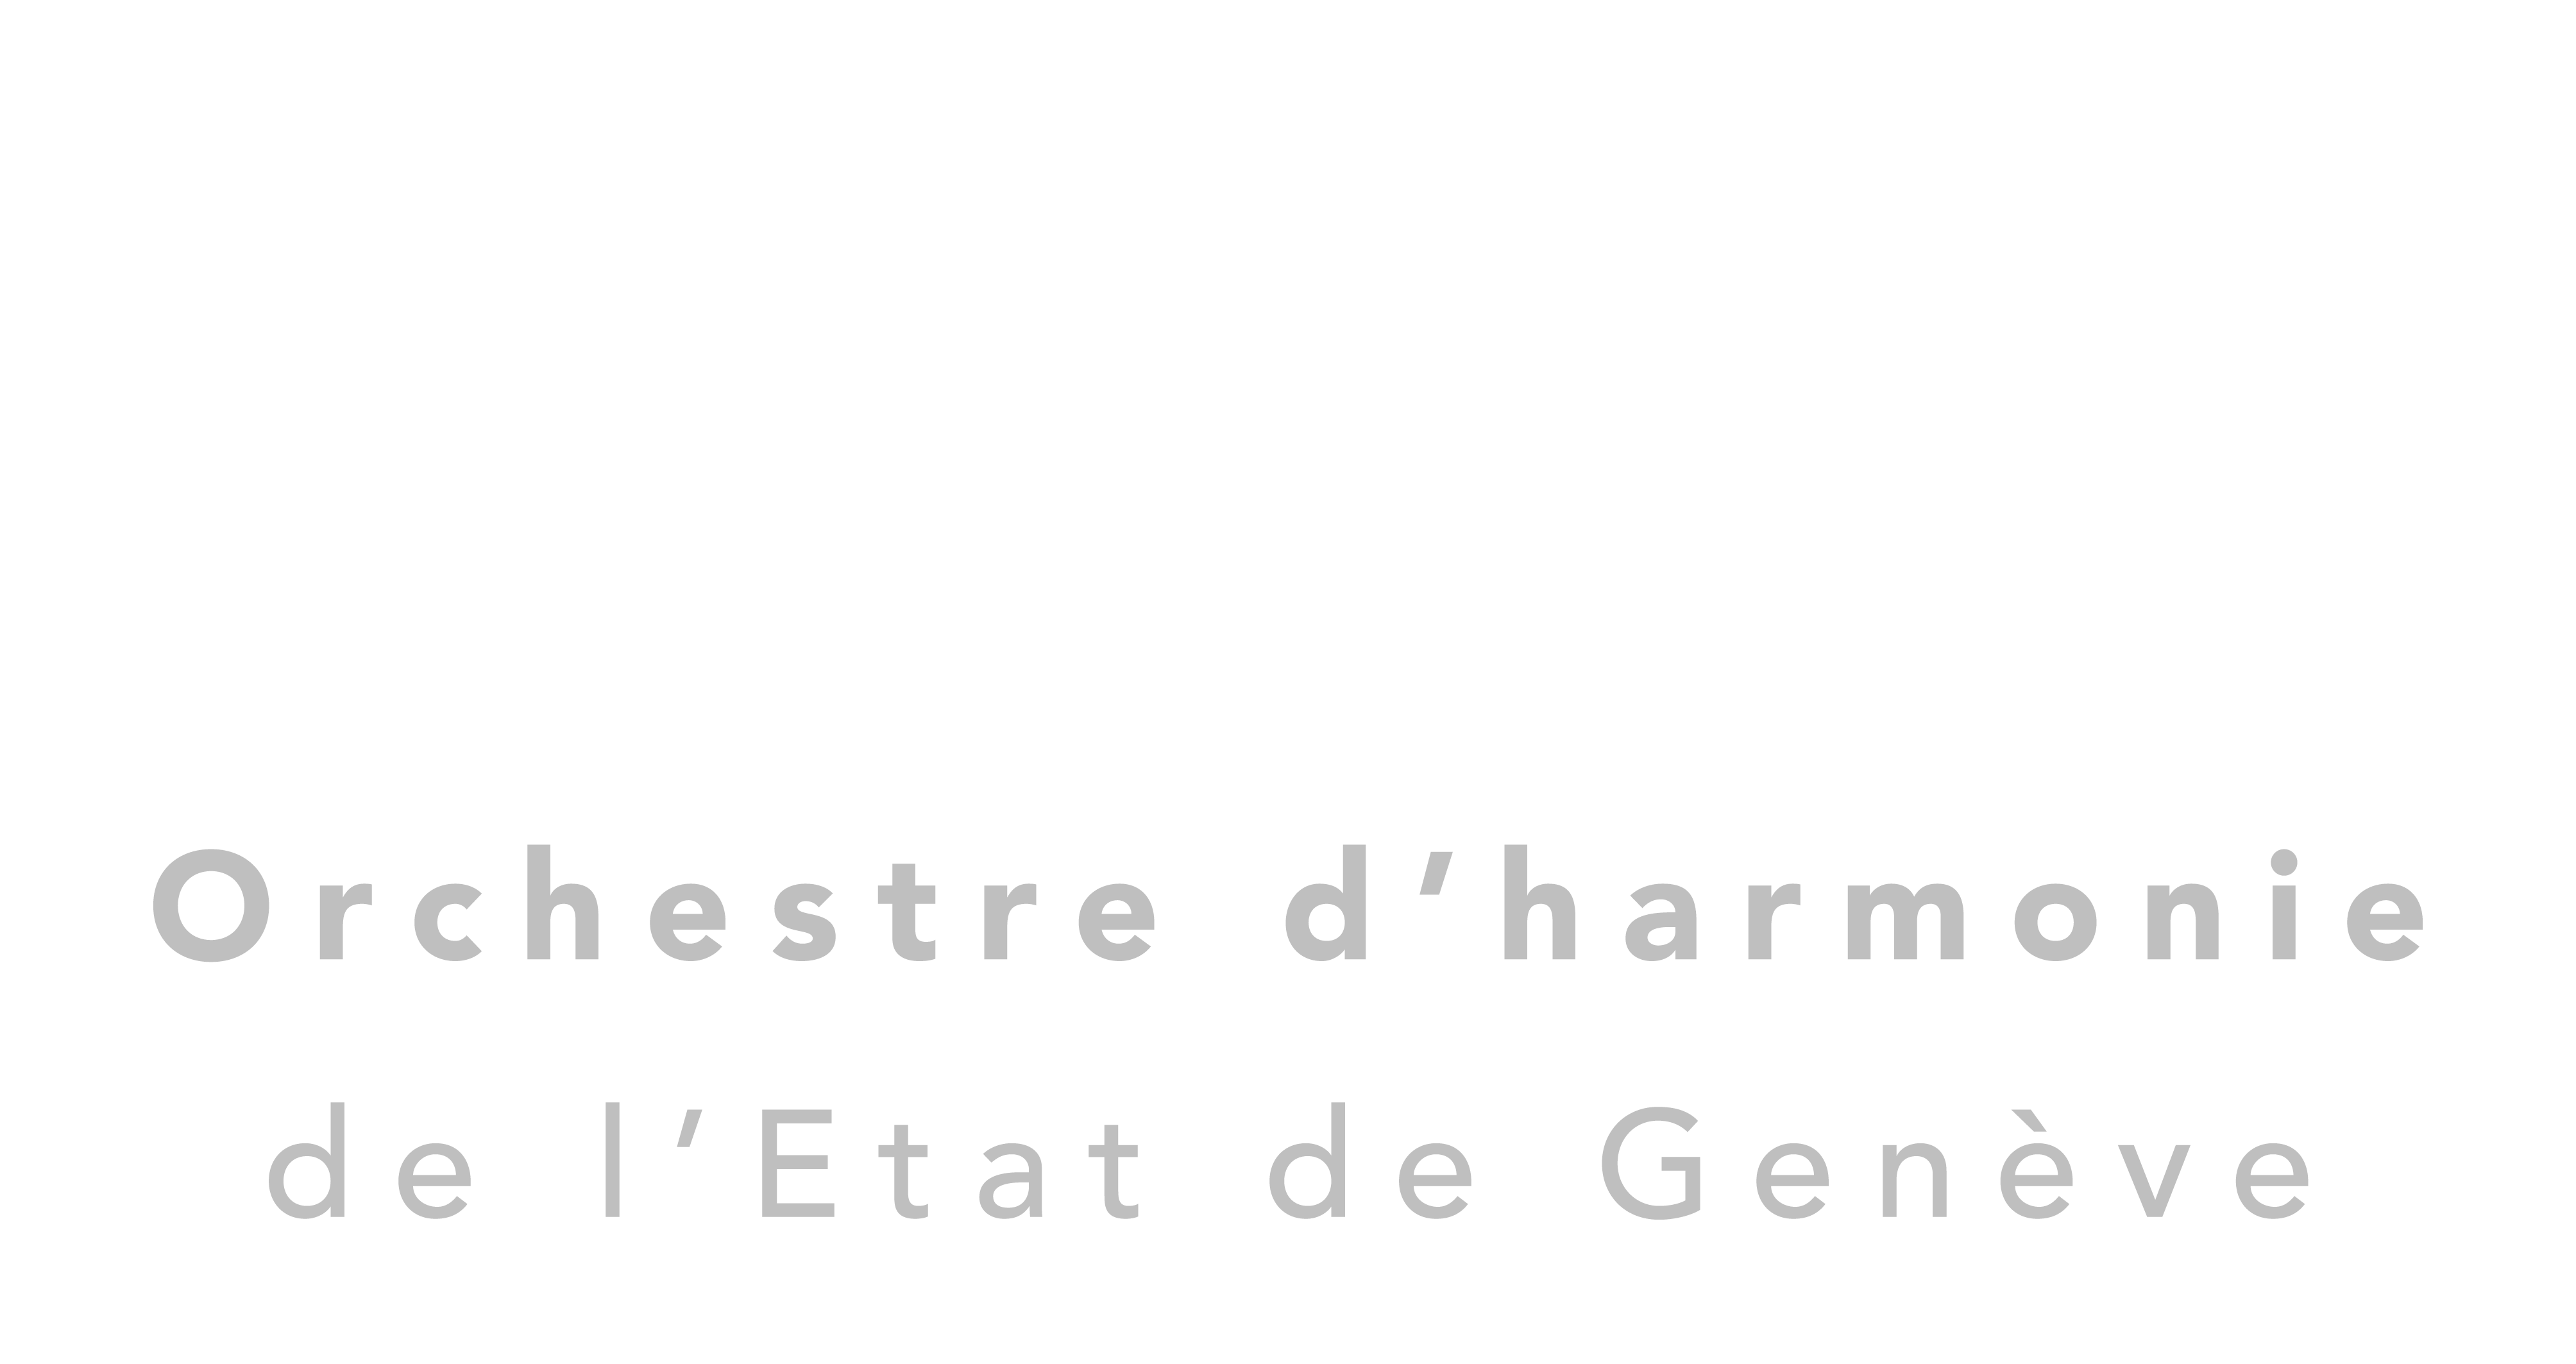 Orchestre d'harmonie de l'Etat de Genève